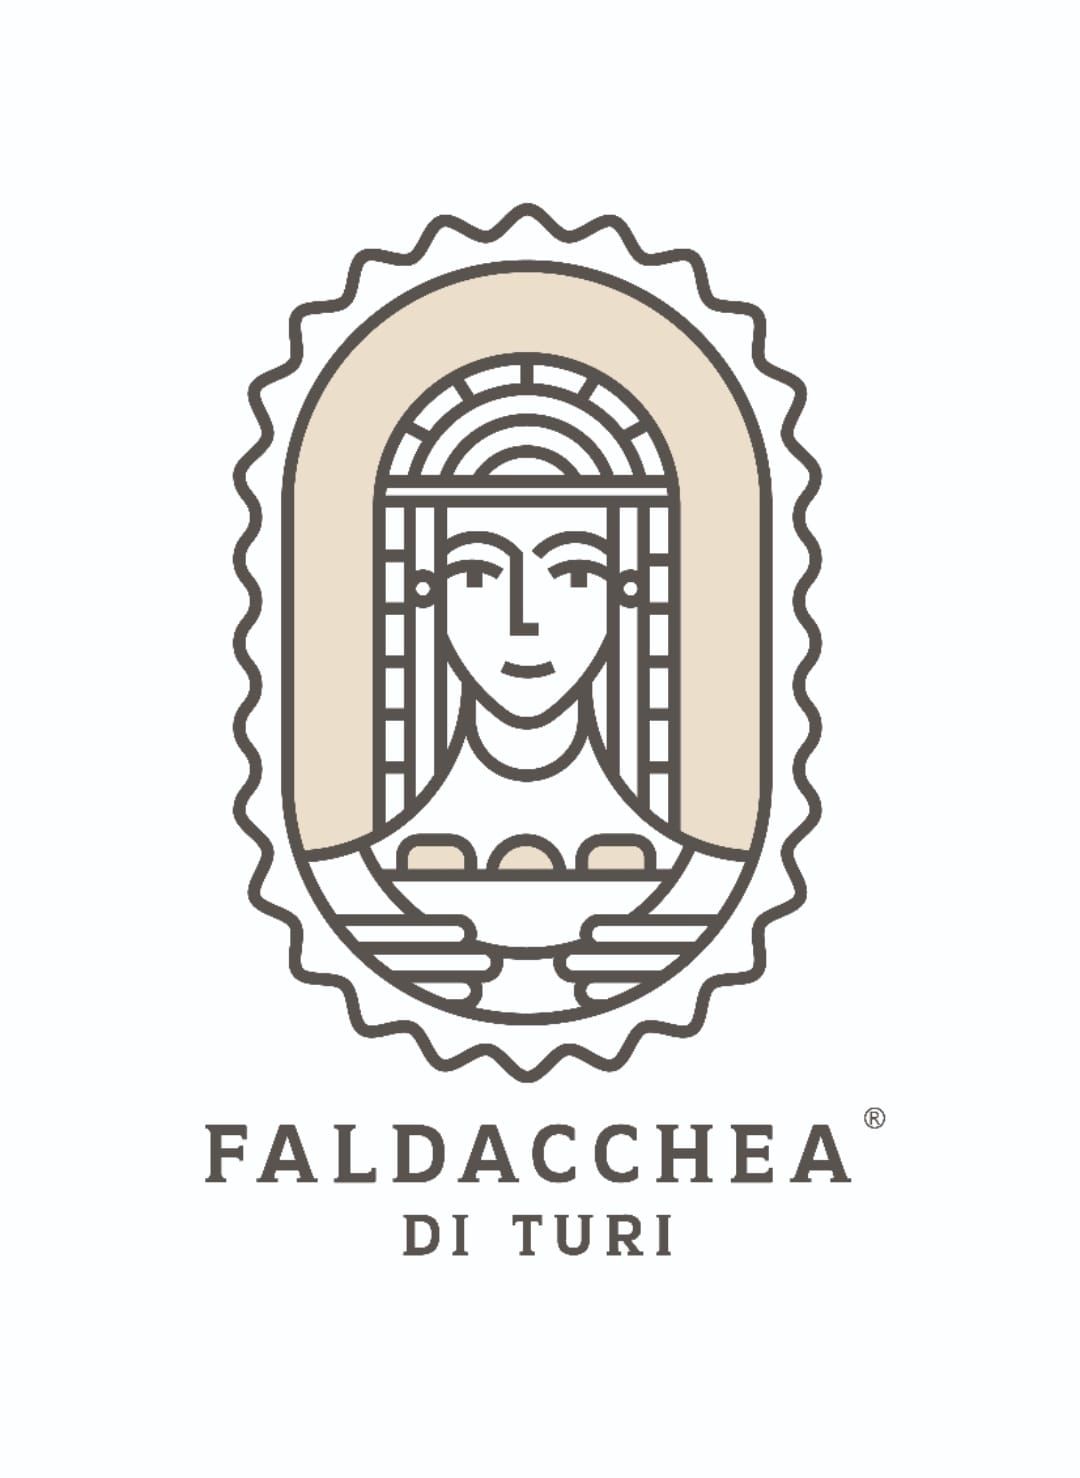 Galleria La Faldacchea di Turi diventa marchio collettivo, svelato il brand del dolce tipico pugliese - Diapositiva 3 di 8